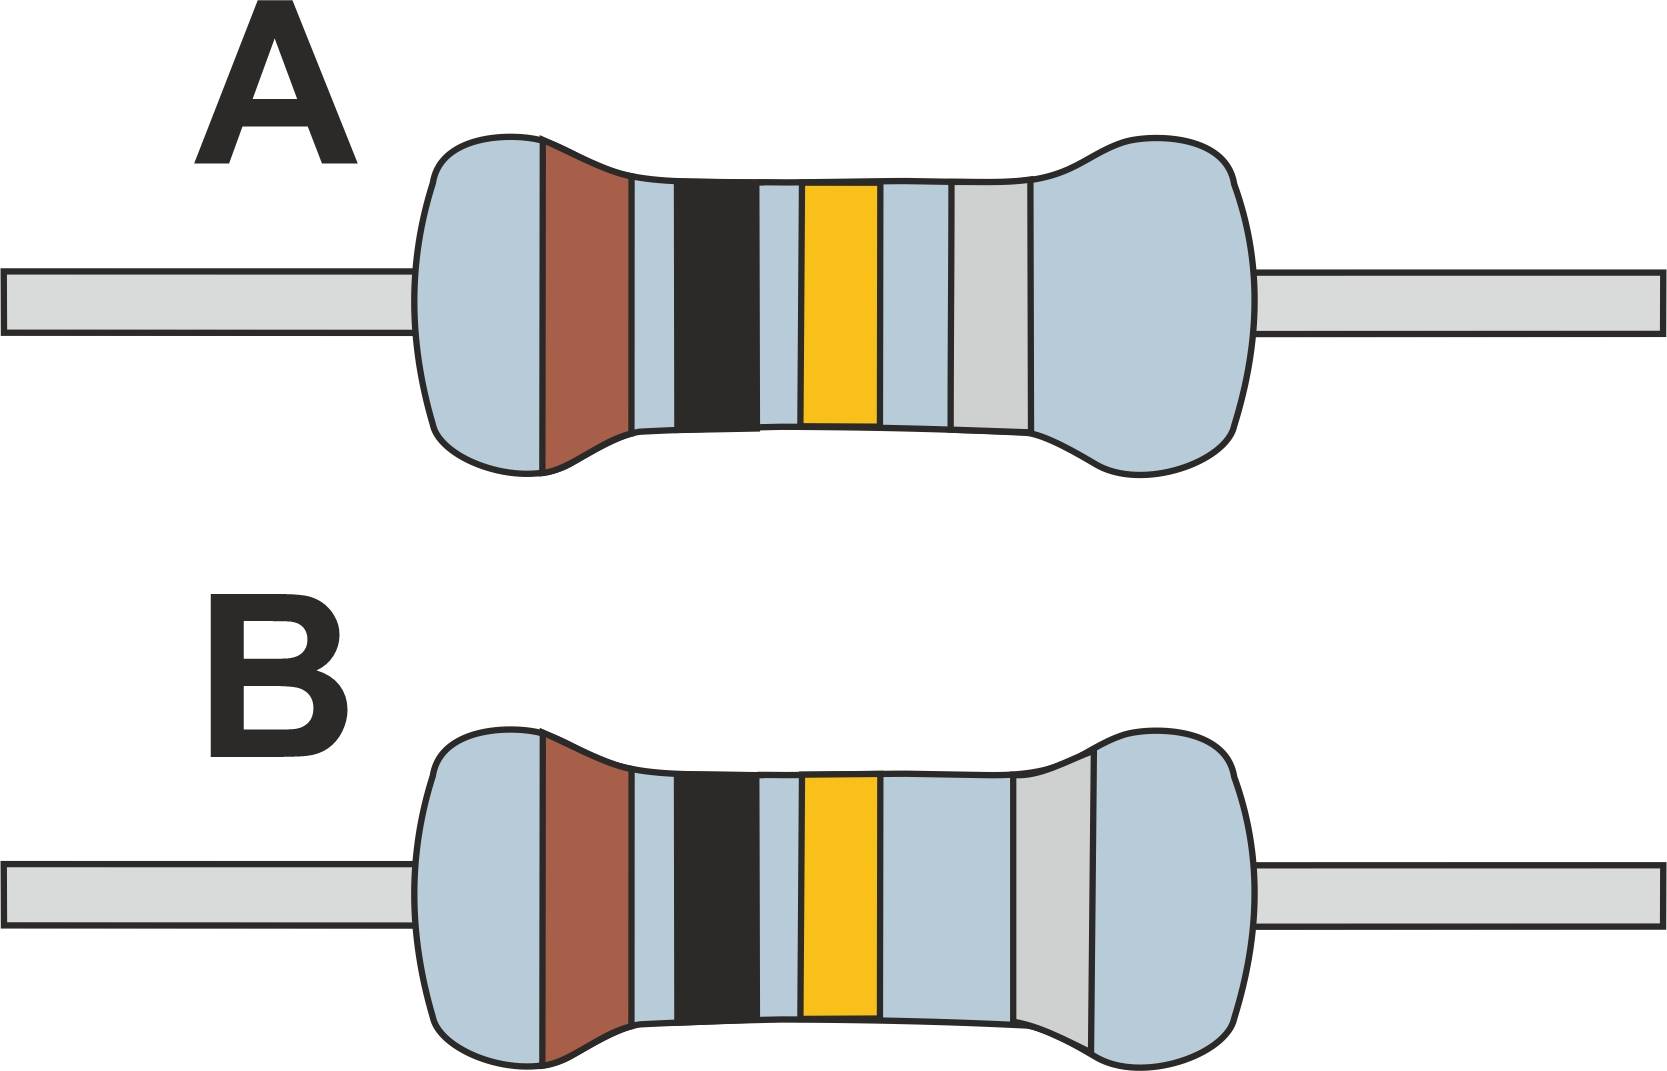 Widerstand Farbcode » Erklärung & Tabelle der Farben bei 3 - 6 Ringen